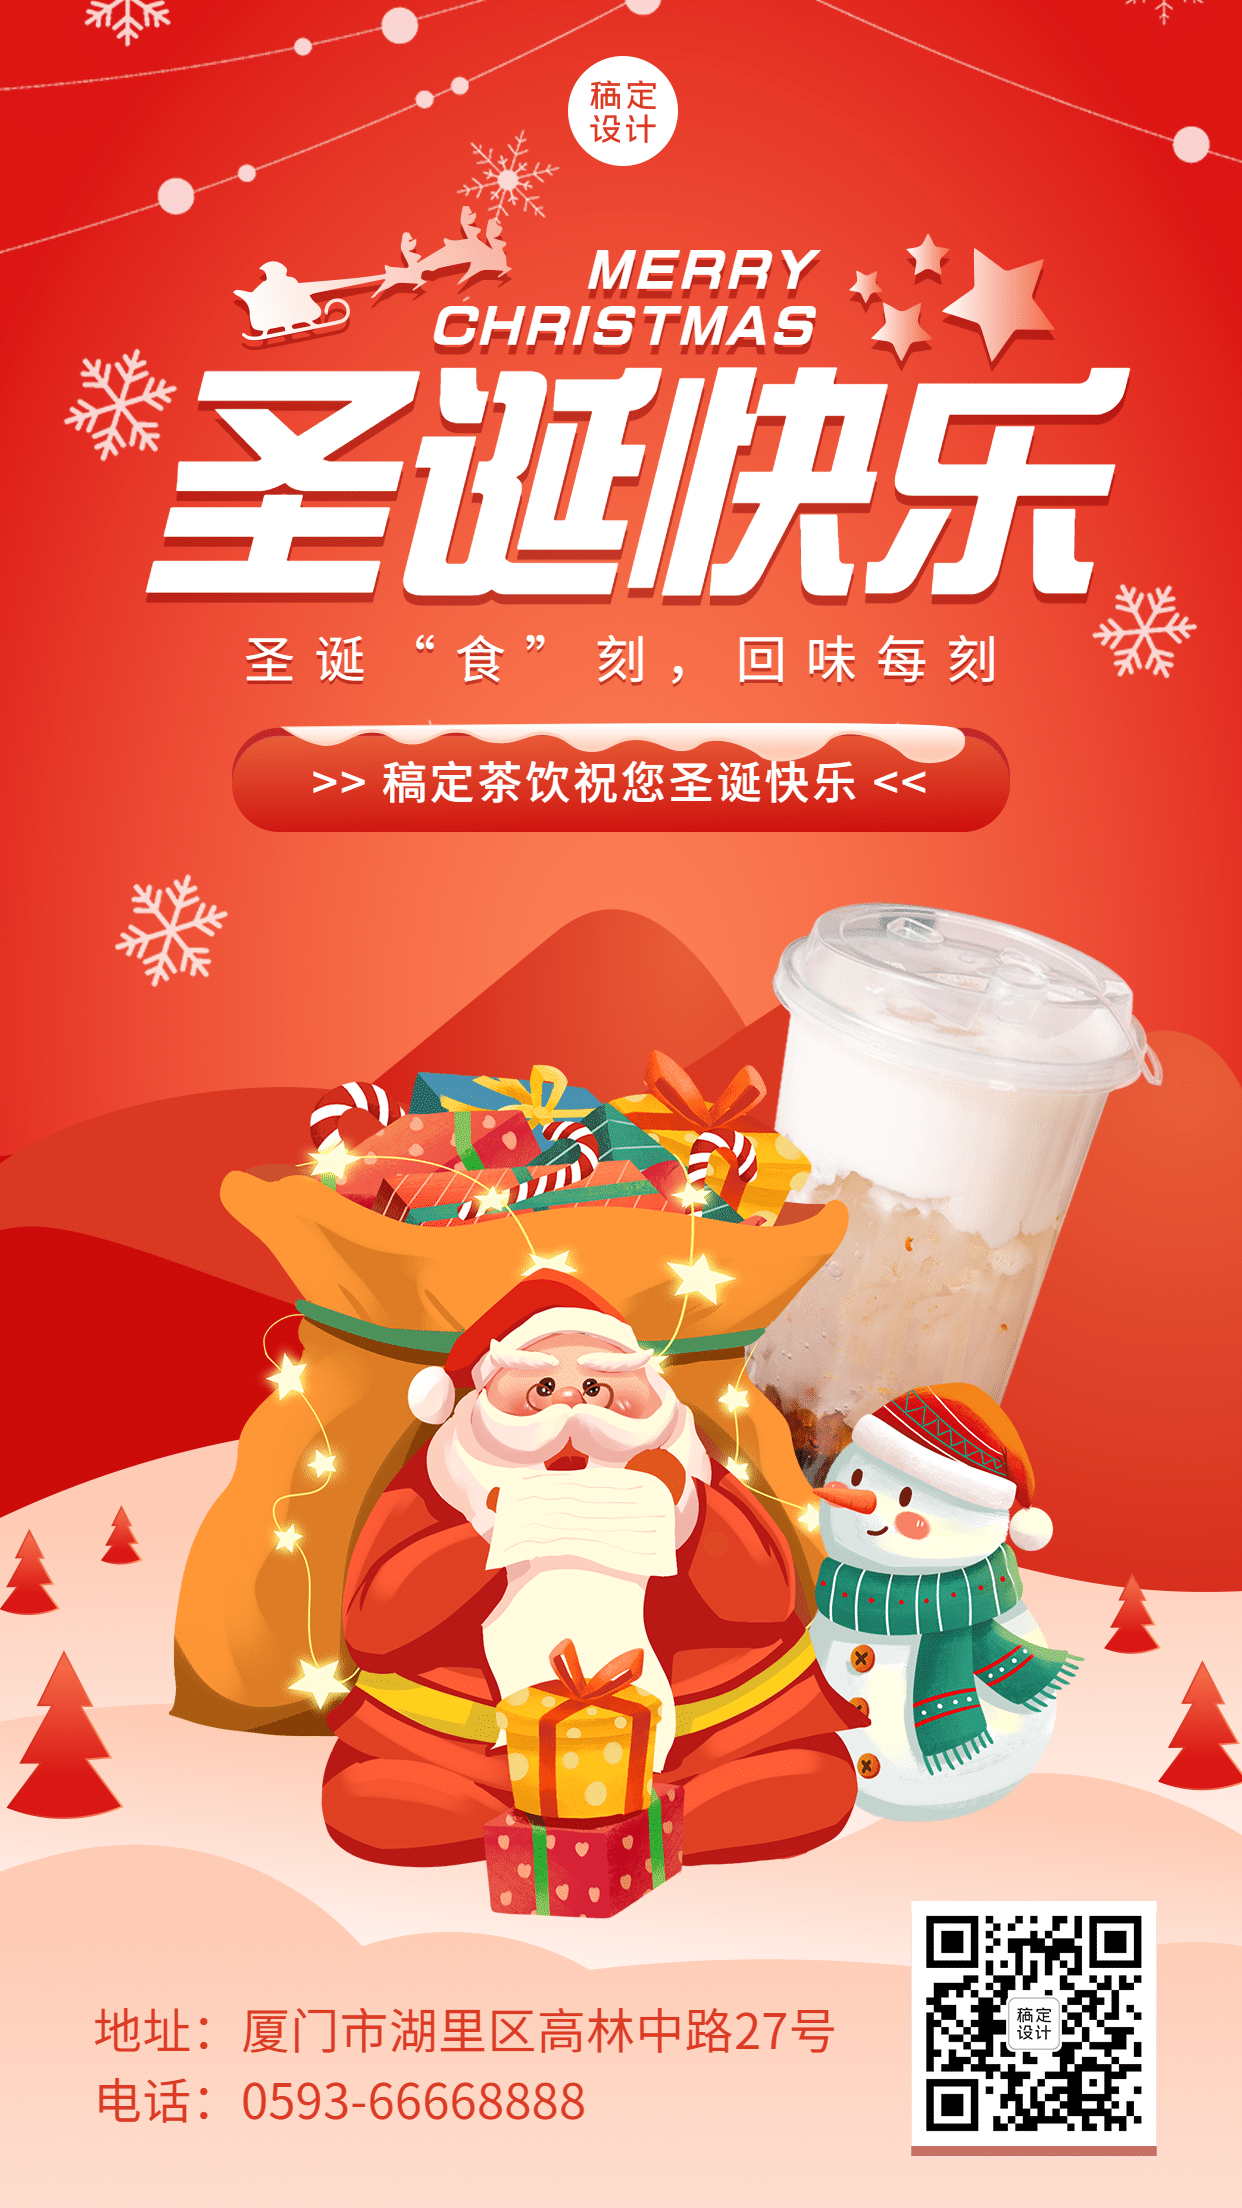 圣诞节奶茶饮品产品营销喜庆海报